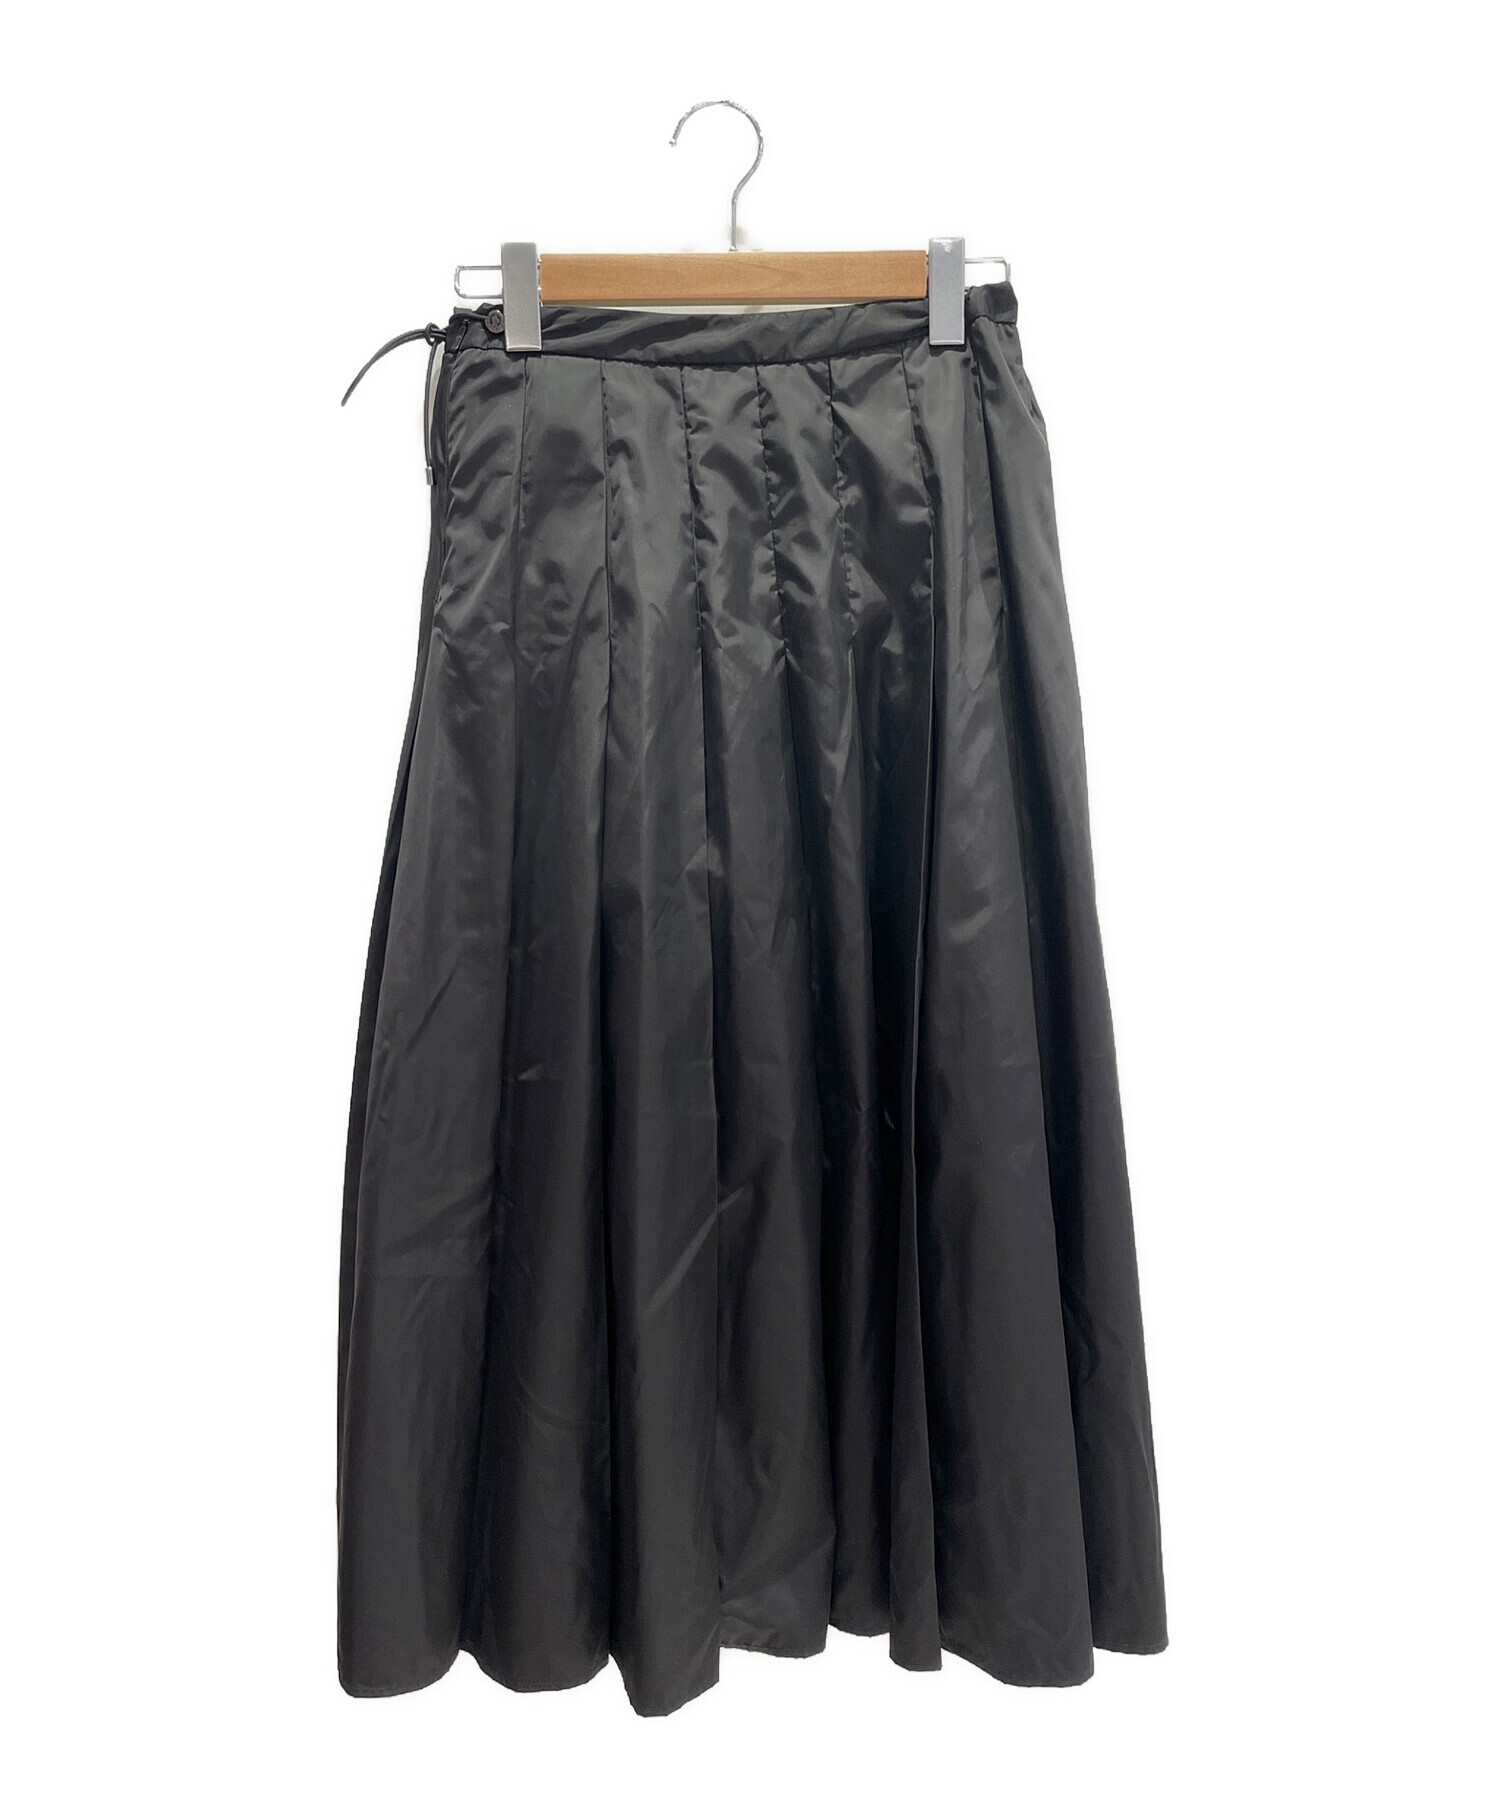 モンクレール スカート42サイズ